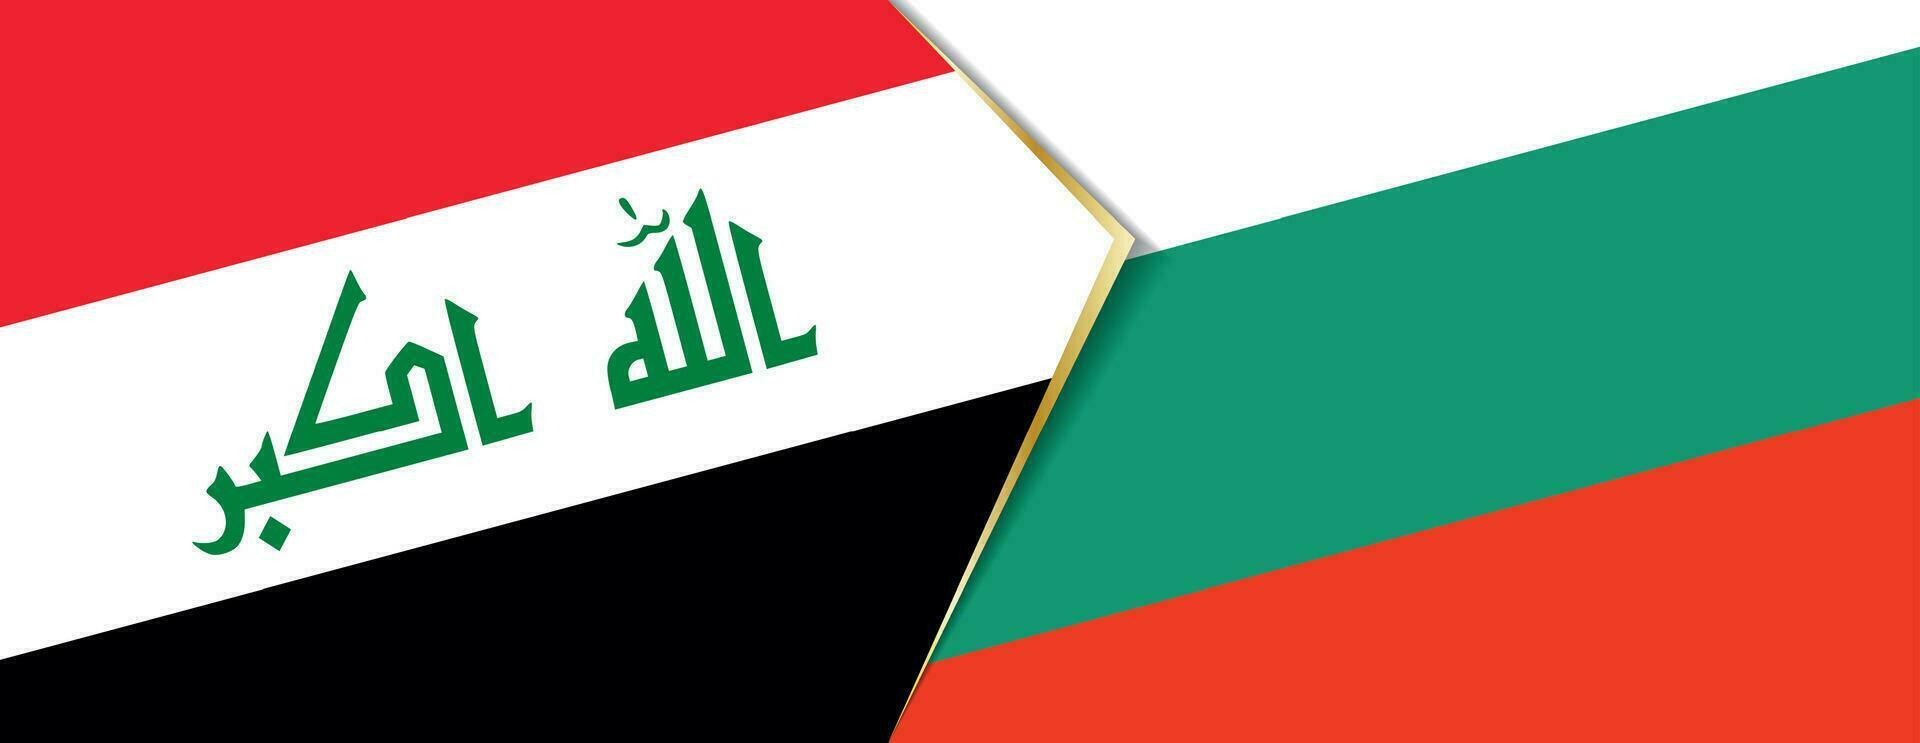 Irak y Bulgaria banderas, dos vector banderas